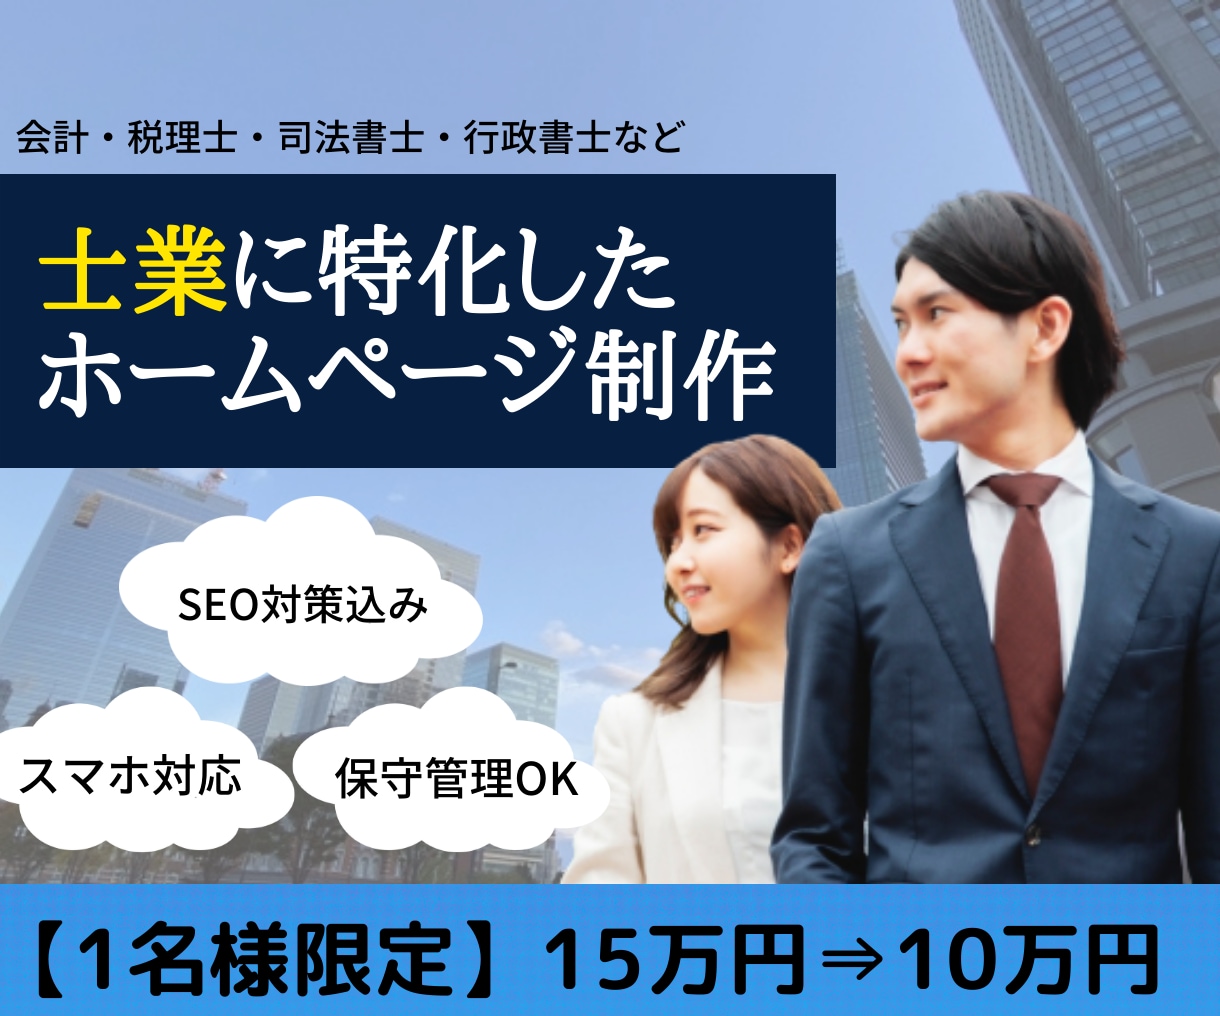 税理士・行政書士など士業専門でホームページ作ります 12万円で「信頼感」溢れるホームページが作れます。 イメージ1